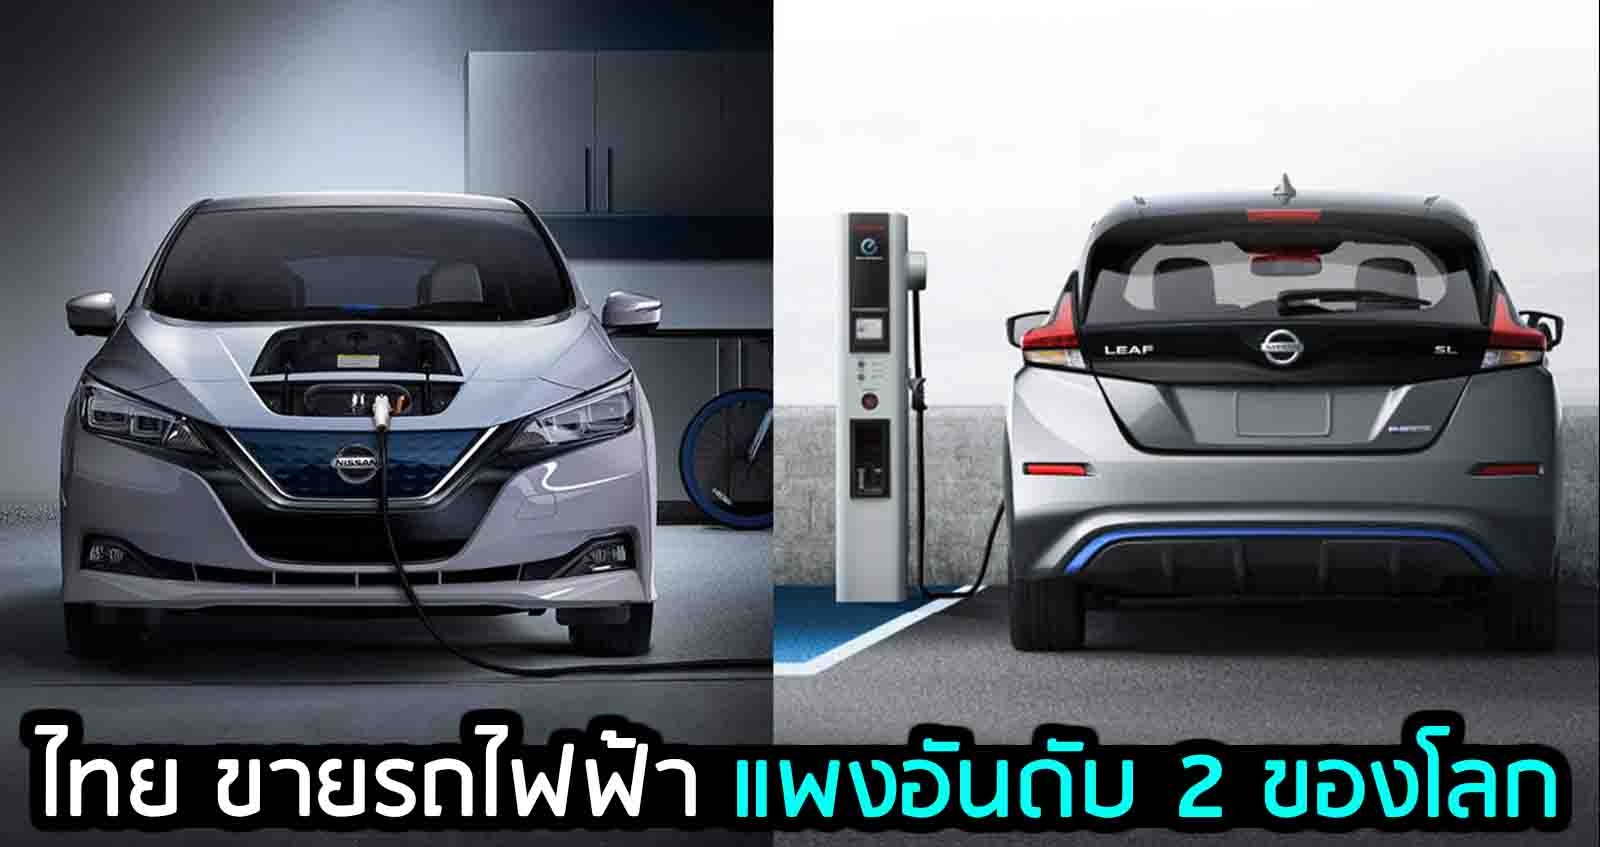 ประเทศไทย ขายรถยนต์ไฟฟ้า แพง อันดับ 2 ของโลก